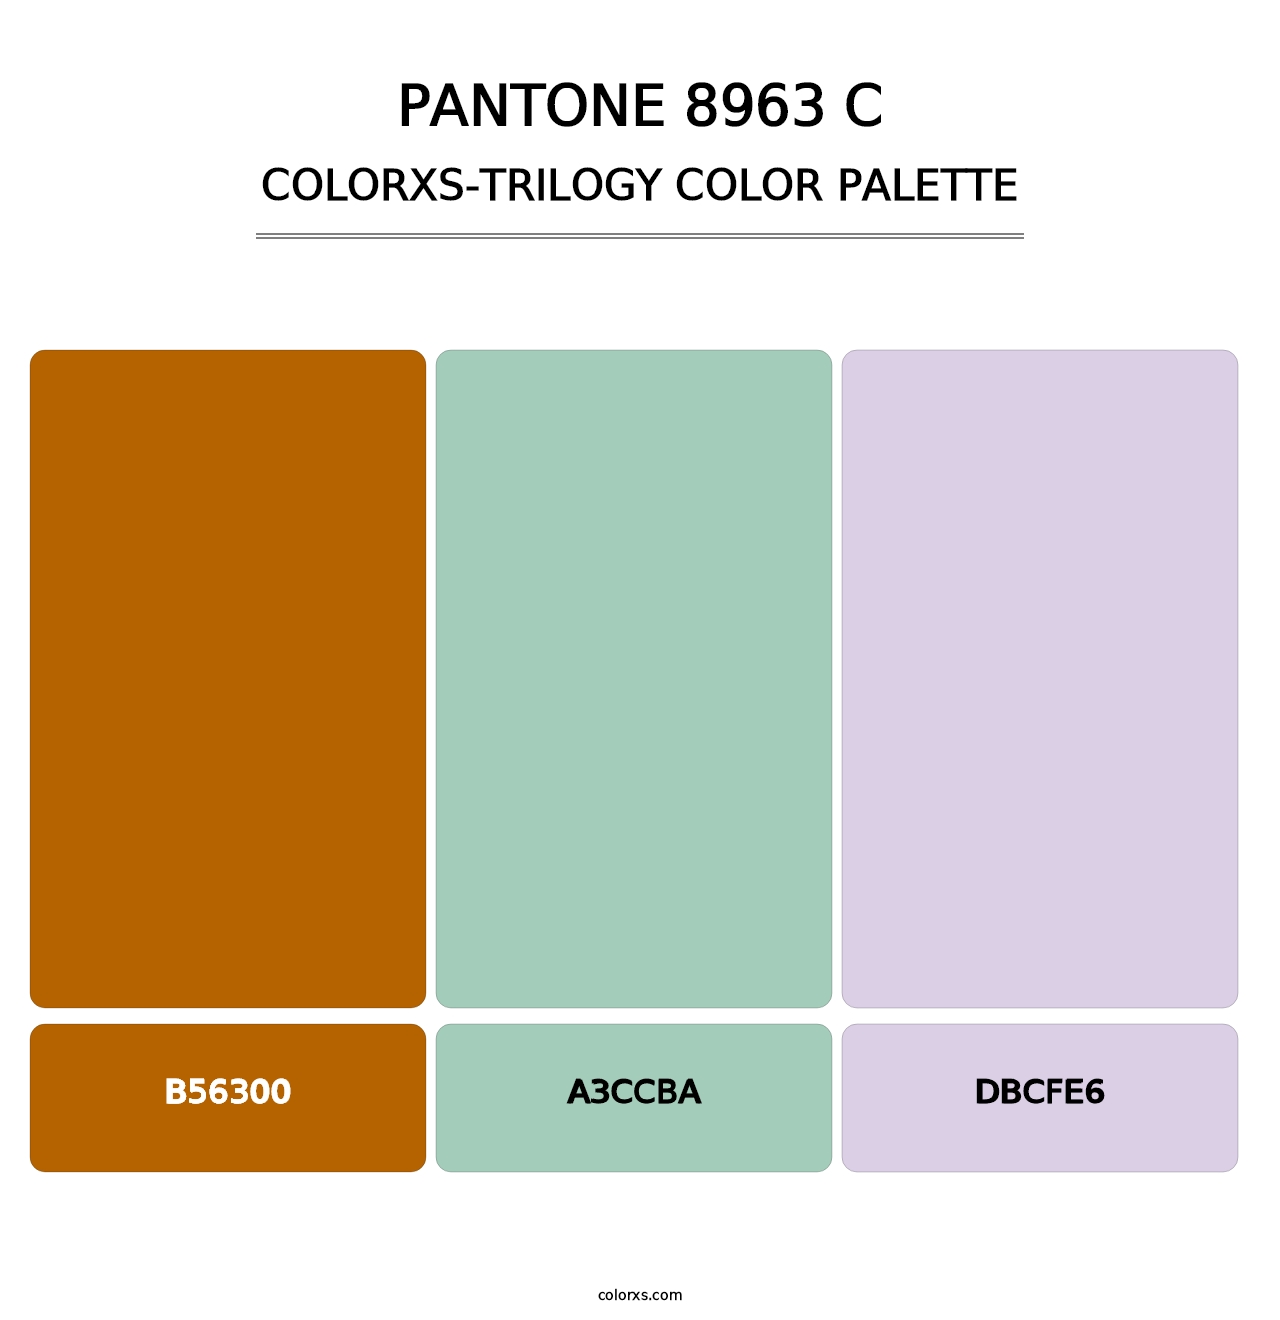 PANTONE 8963 C - Colorxs Trilogy Palette